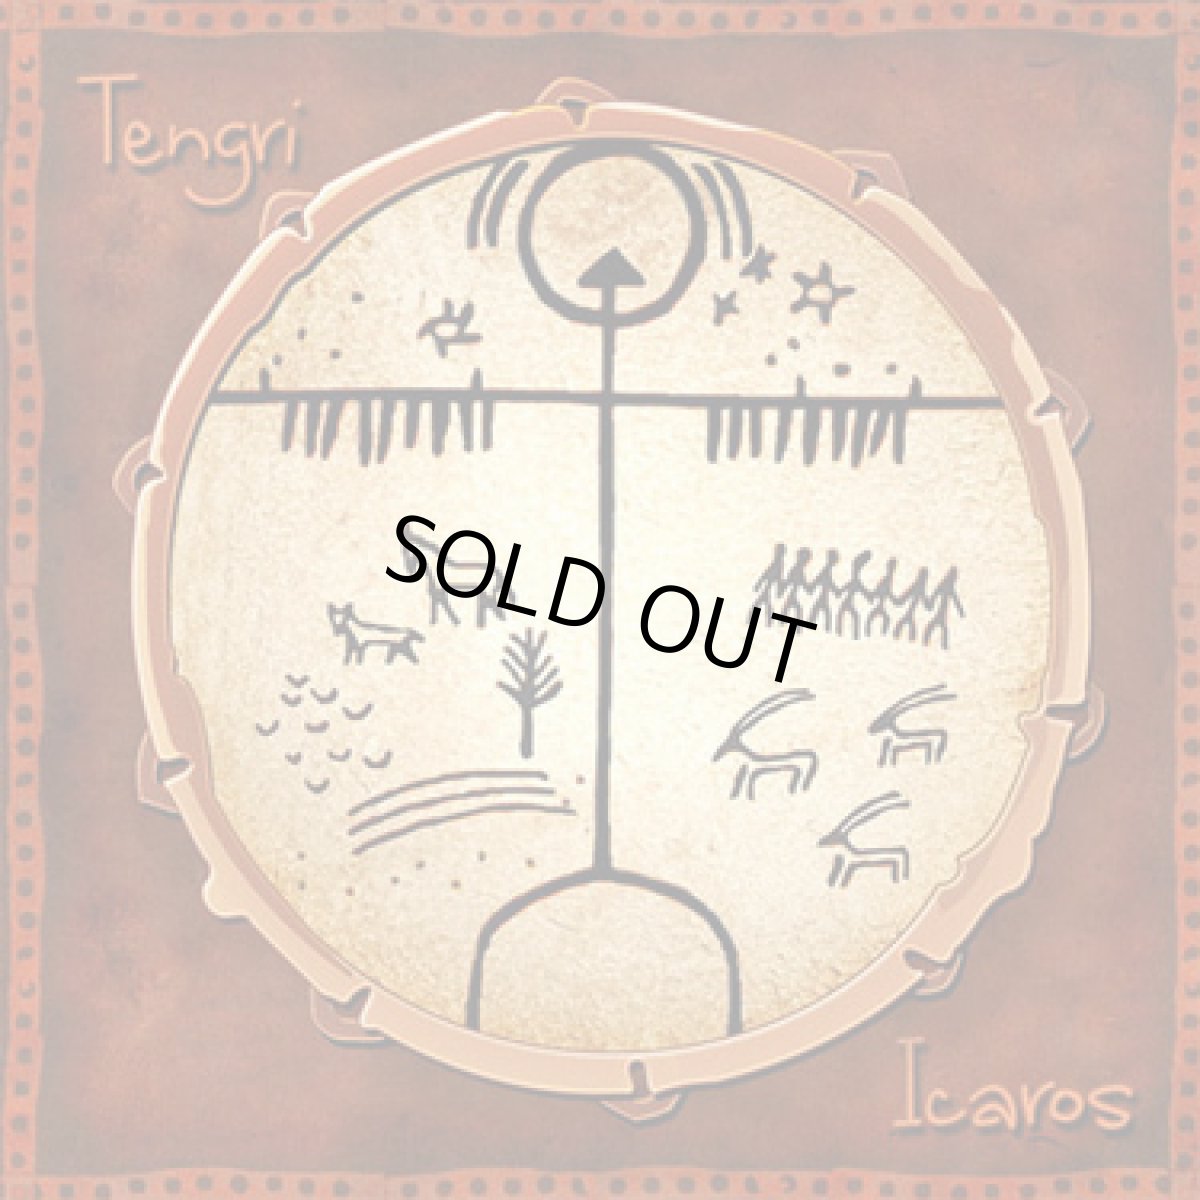 画像1: CD「TENGRI / Icaros」【エスニック・ダウンテンポ】 (1)